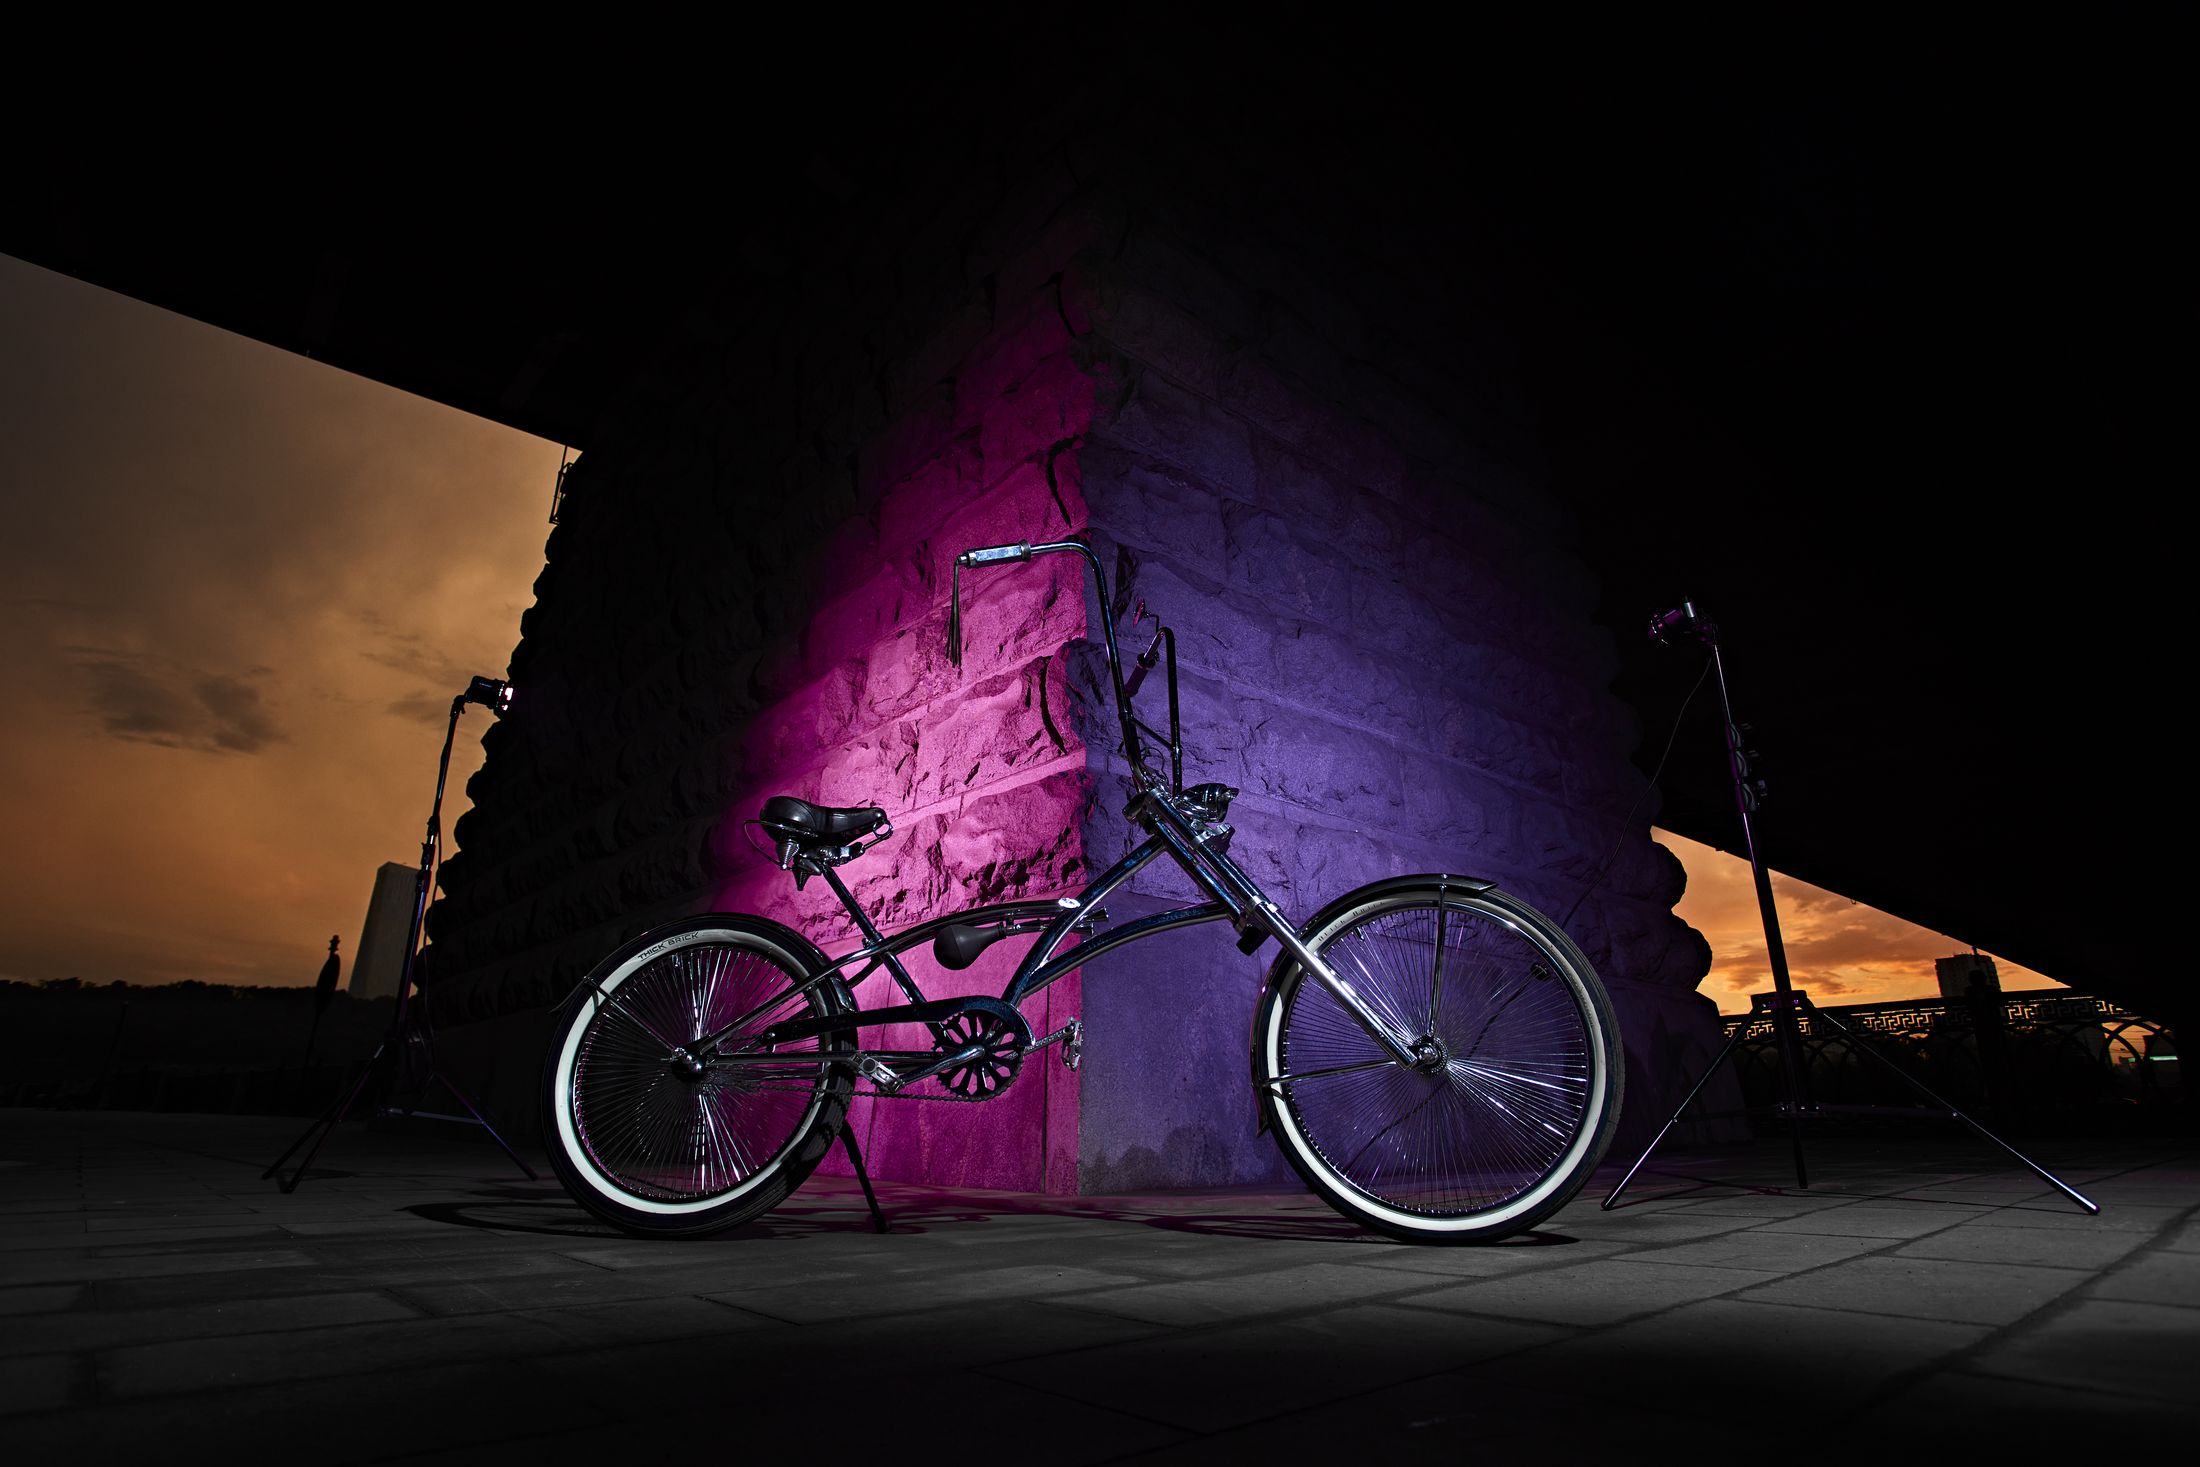 Обзор Profoto OCF II – новое поколение насадок или как мы снимали велосипед [#ProСвет №10]